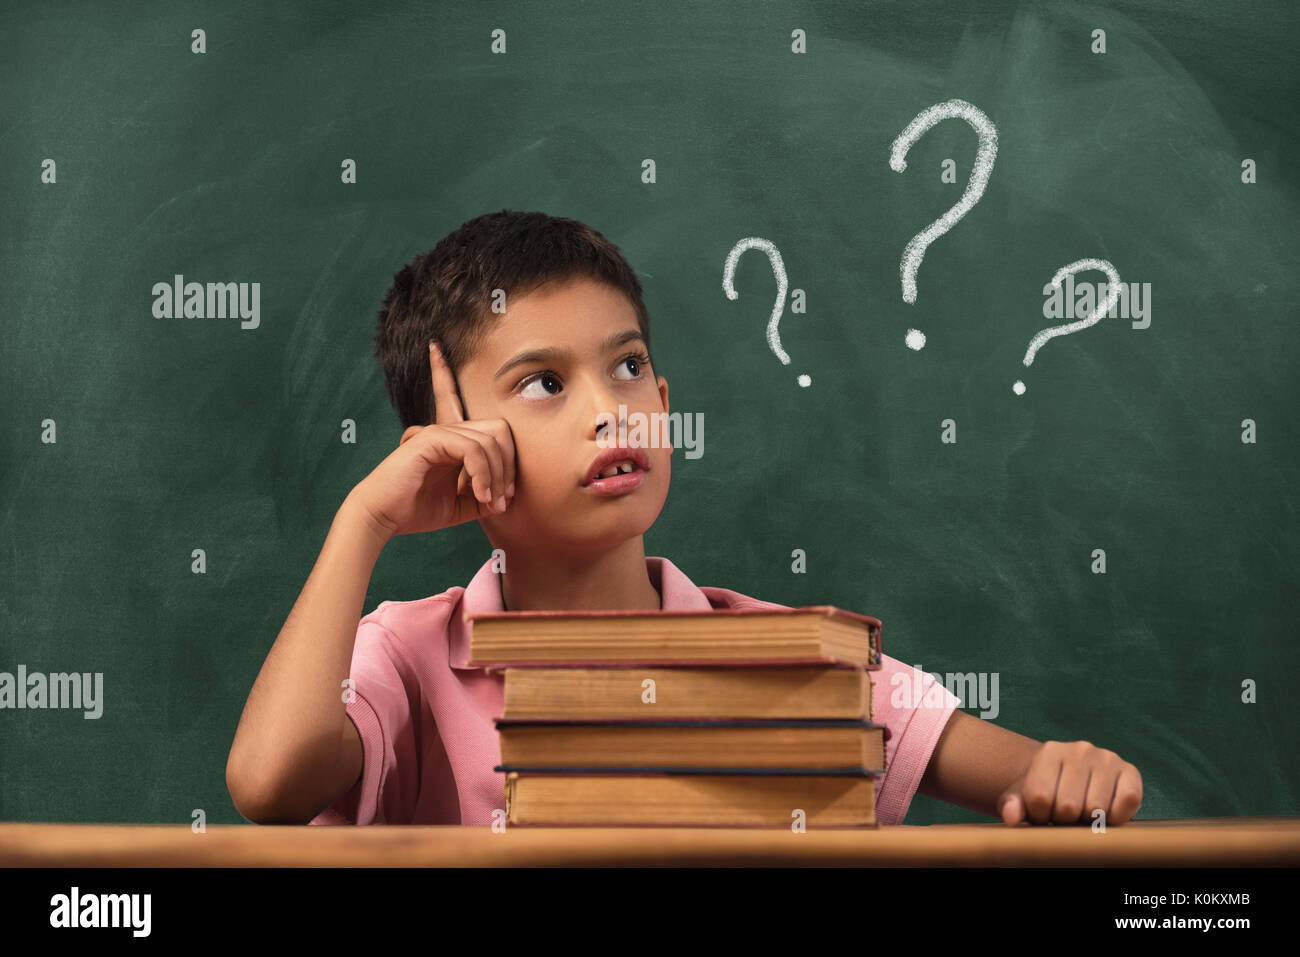 Junge mit Zweifel und Gedanken in der Klasse. Portrait der männlichen Kind denken gegen Fragezeichen auf blackboard Stockfoto